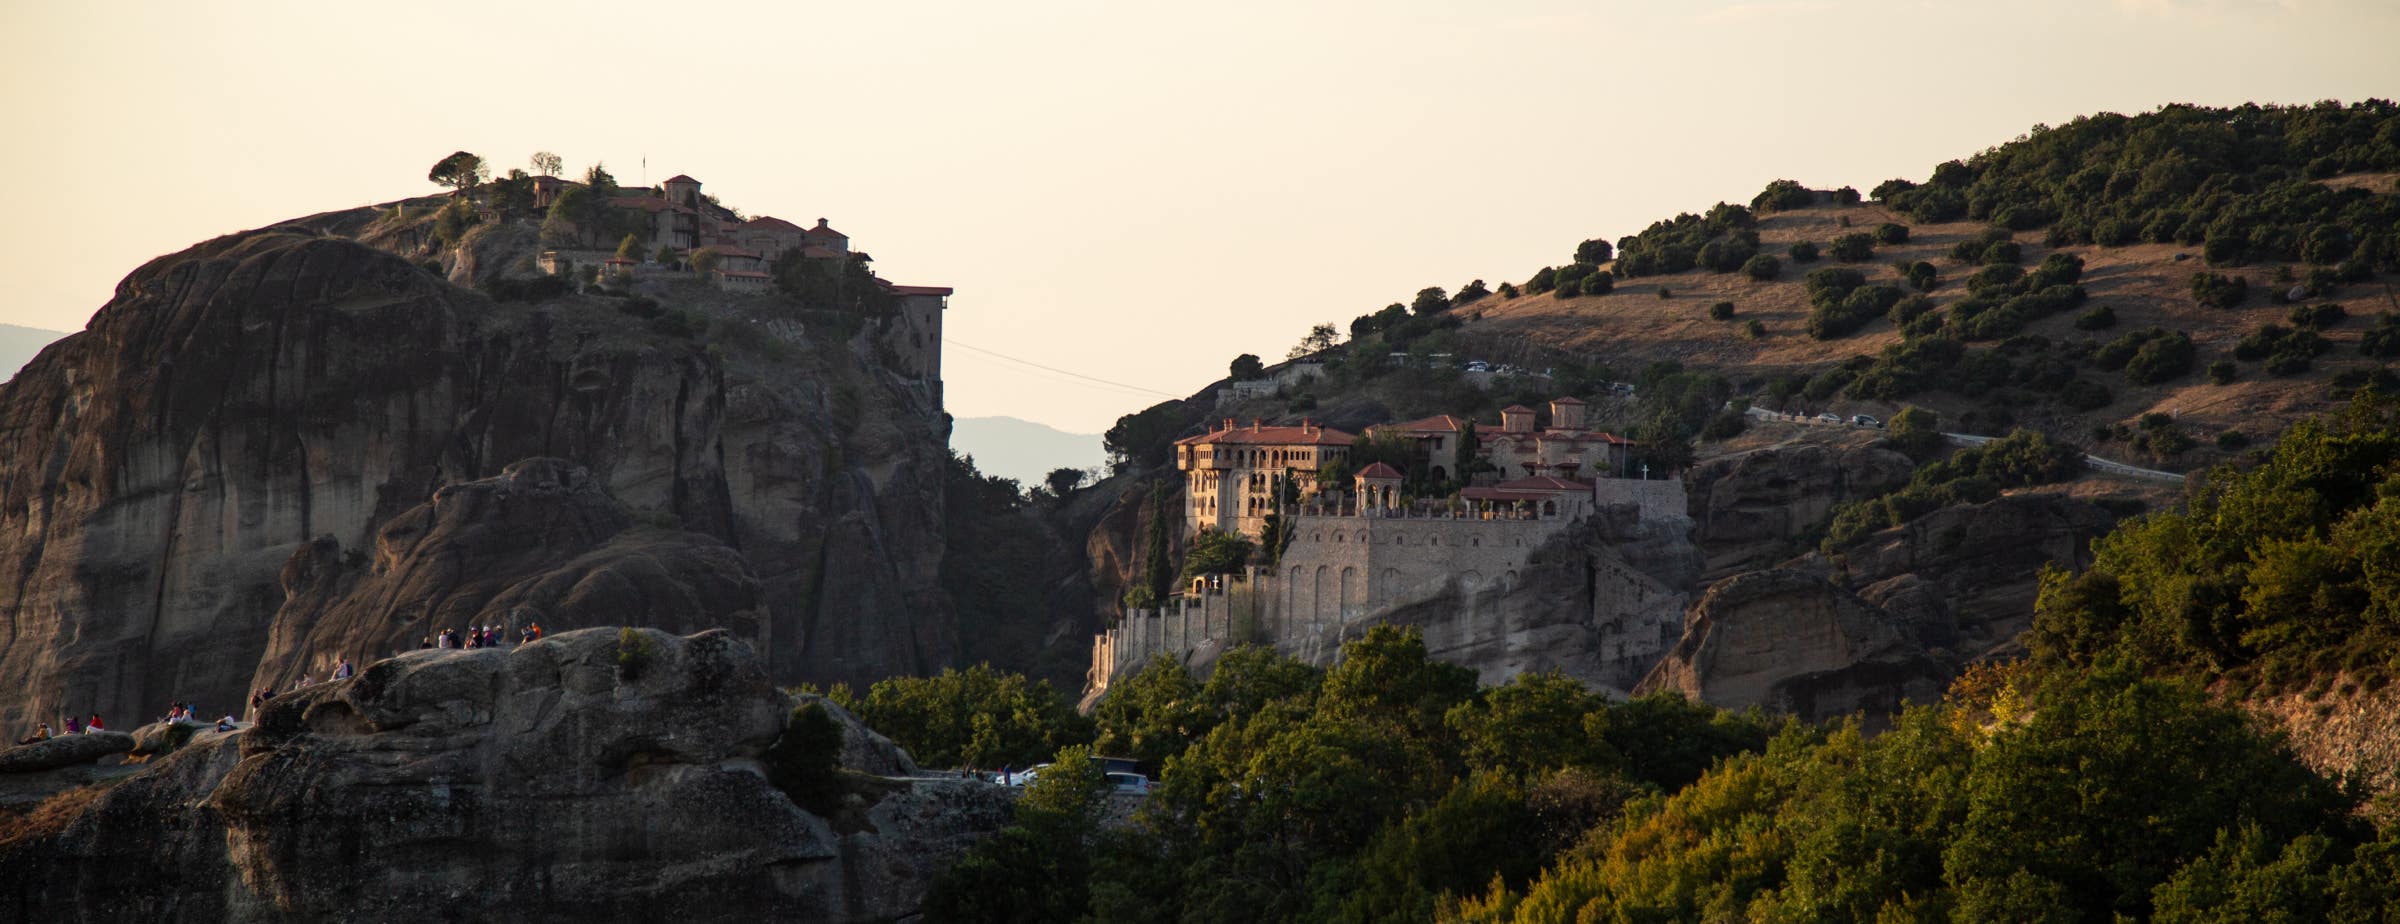 Das Bild zeigt einen Blick auf die Felsen und zwei Klöster von Meteora. Das linke Kloster sitzt auf einem Felsen und das rechte Kloster ist auf Felsen an der Seite eines größeren Hügels gebaut.